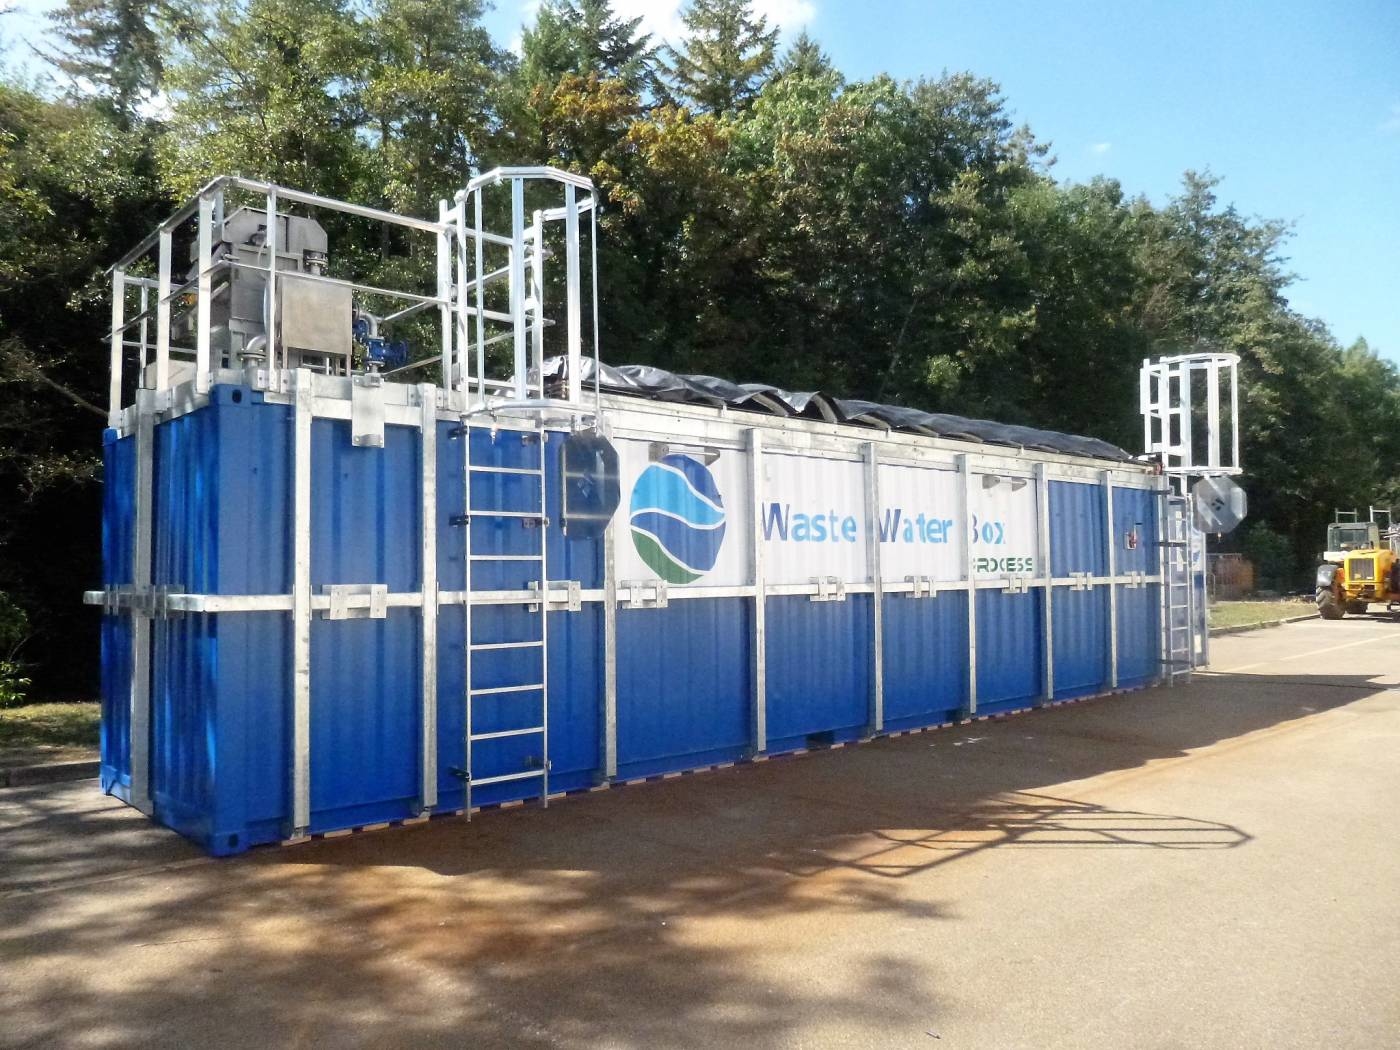 Visuel de Waste Water Box - Série C Station d’épuration compacte intégrée dans des containers maritimes